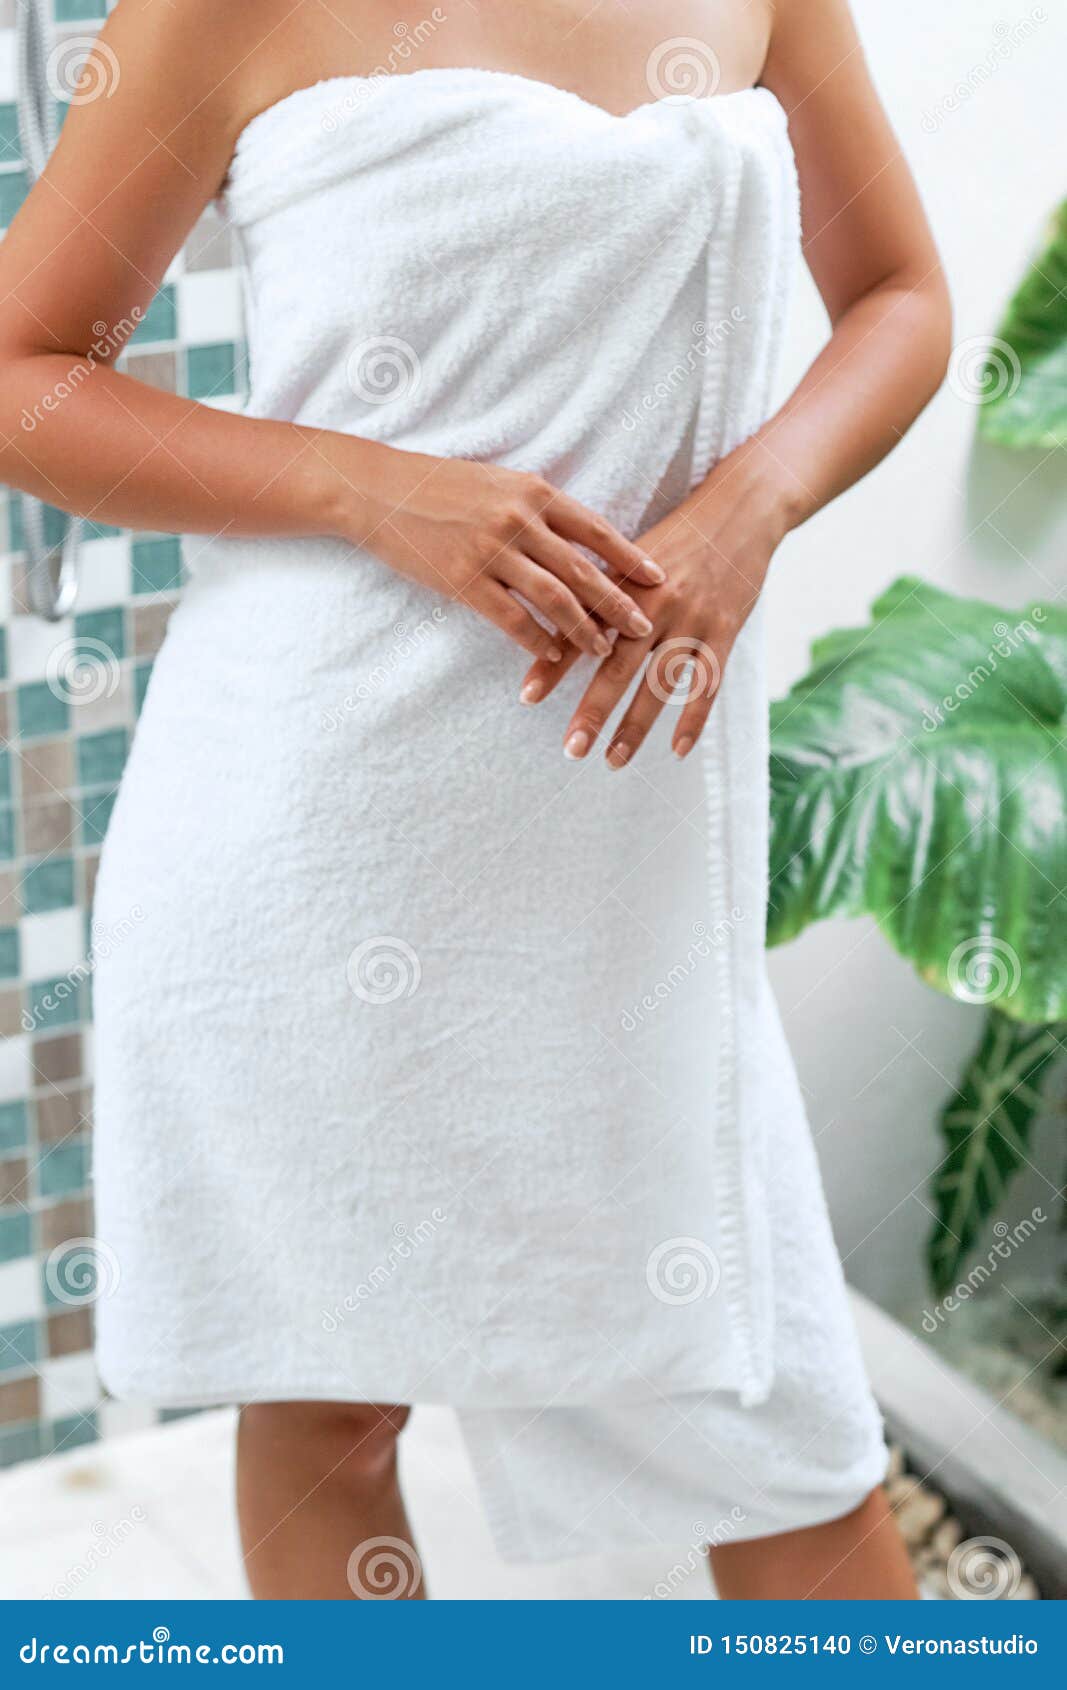 Прикрылась полотенцем. Девушка в полотенце. Красивая девушка в полотенце. Девушка в белом полотенце. Фотосессия в полотенце.